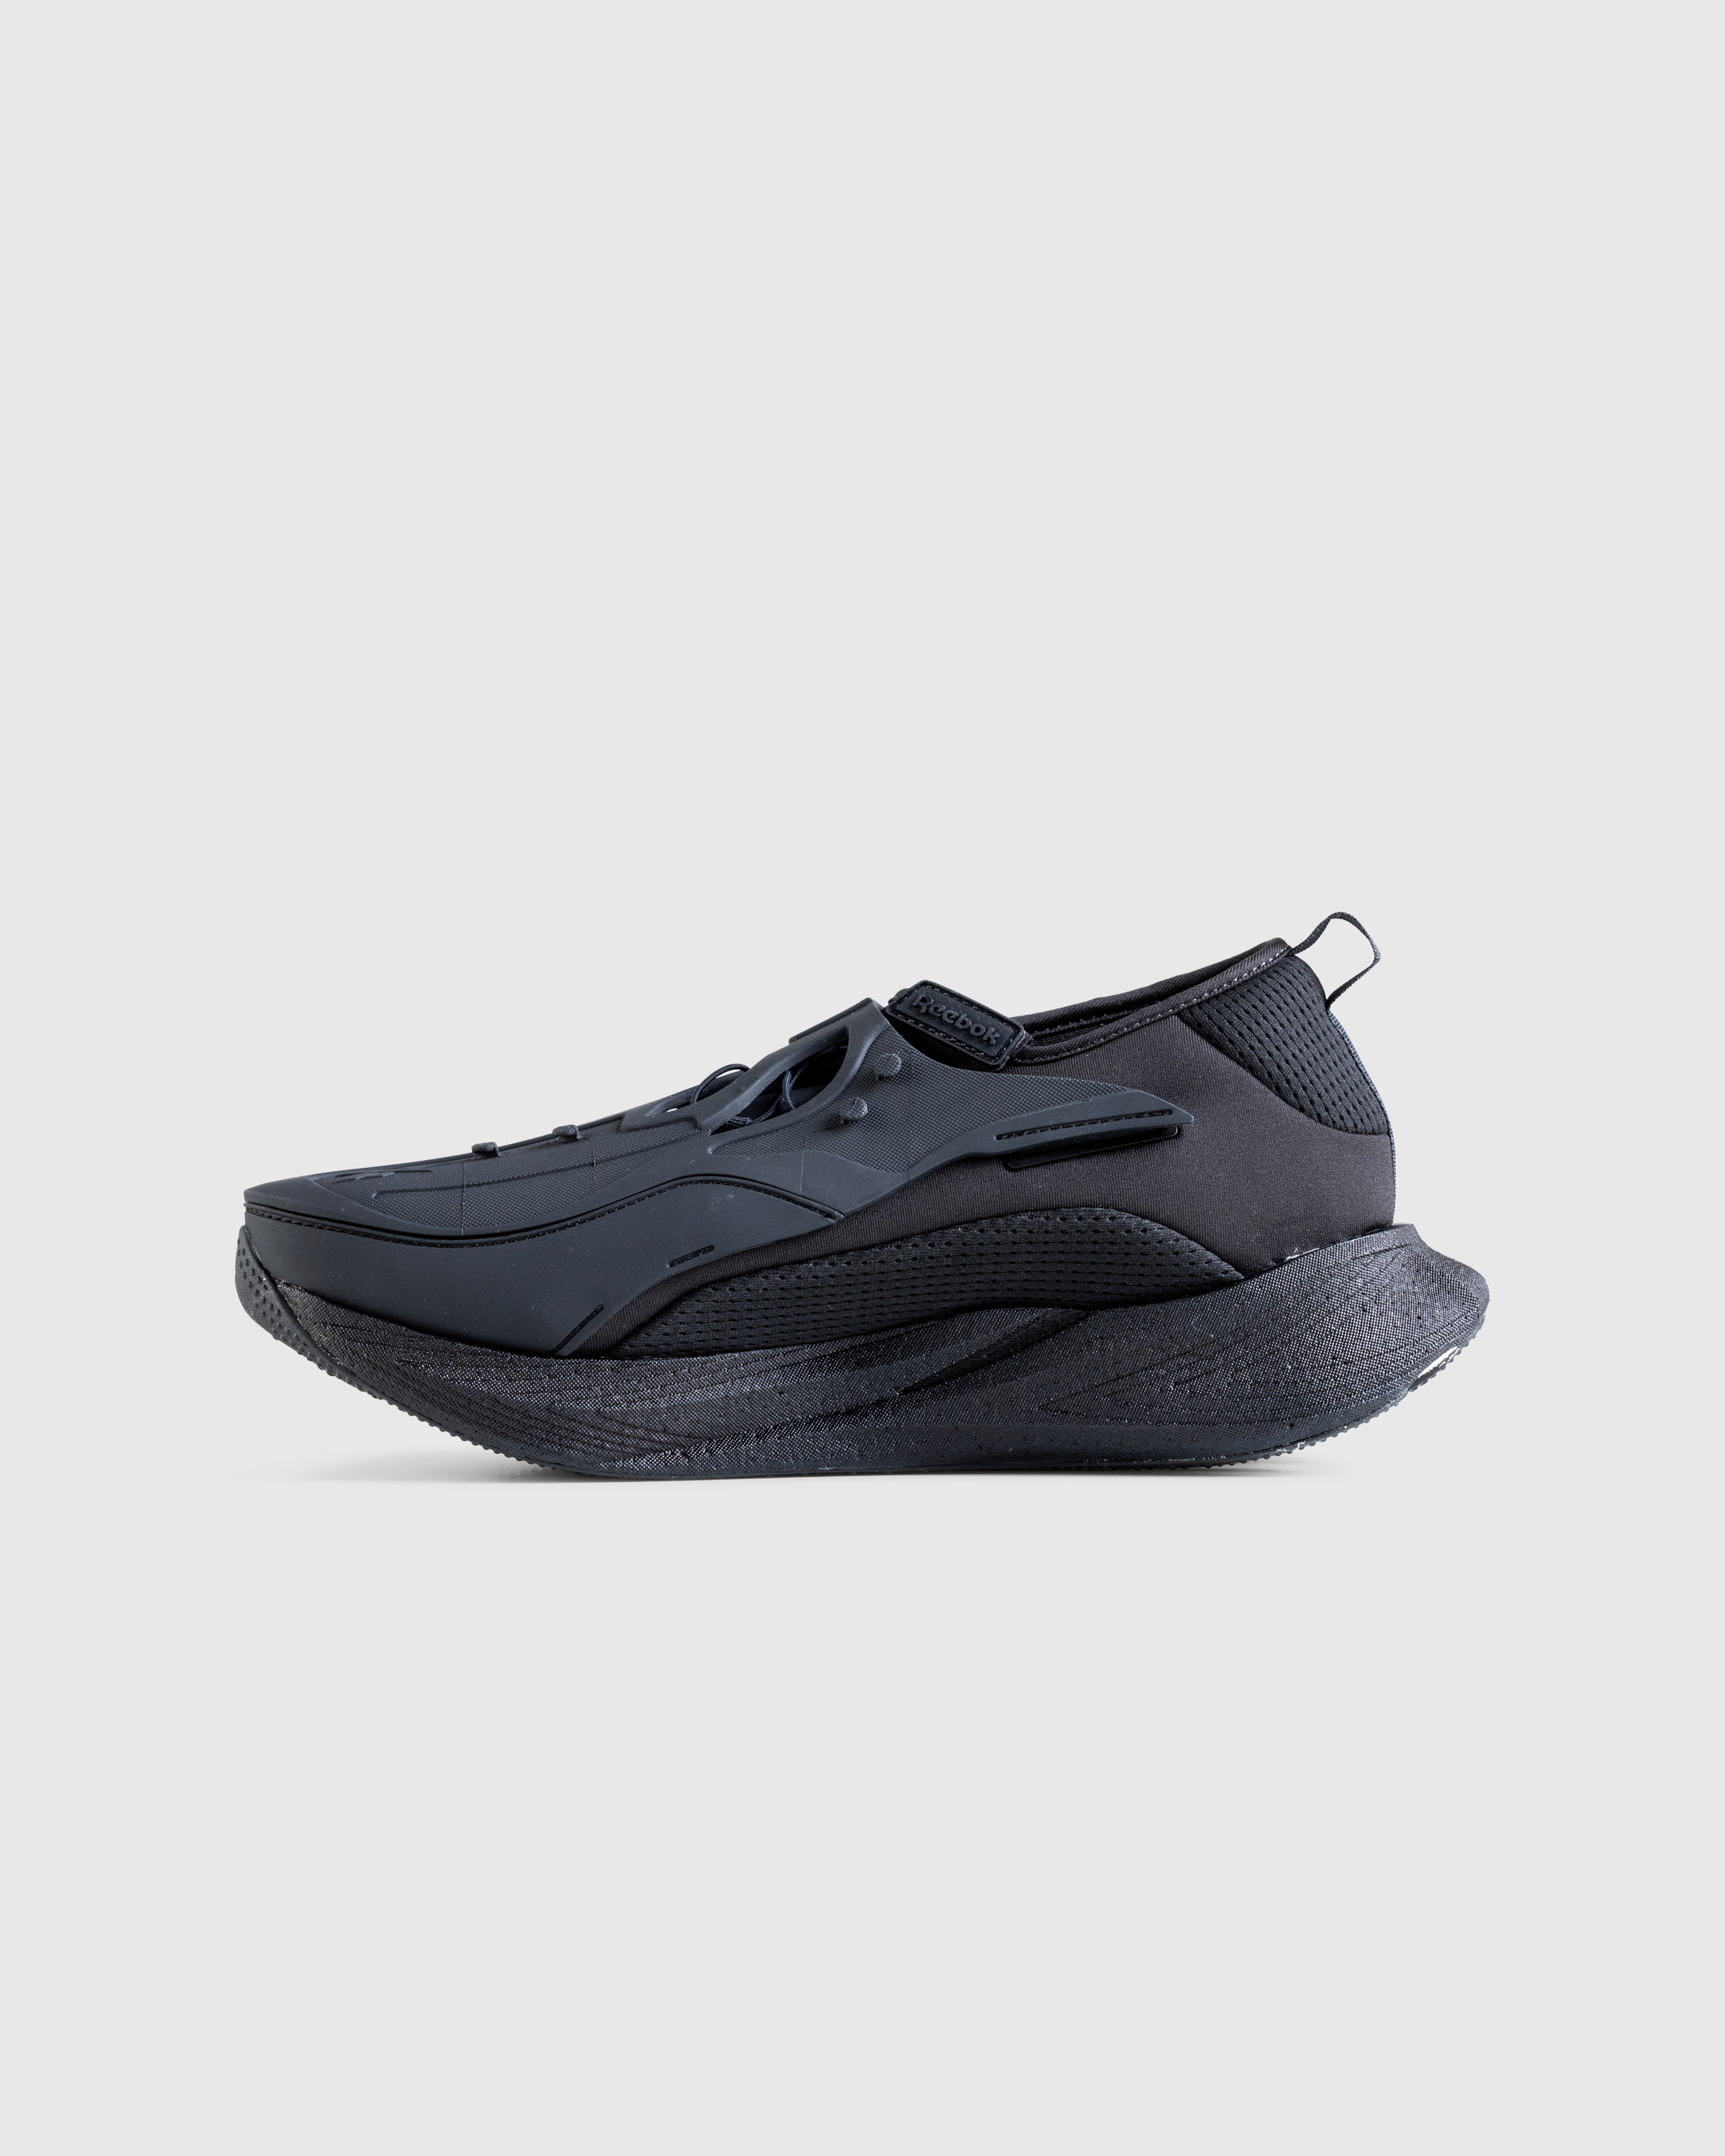 Reebok – Floatride Energy Argus X Black - Sneakers - Black - Image 2